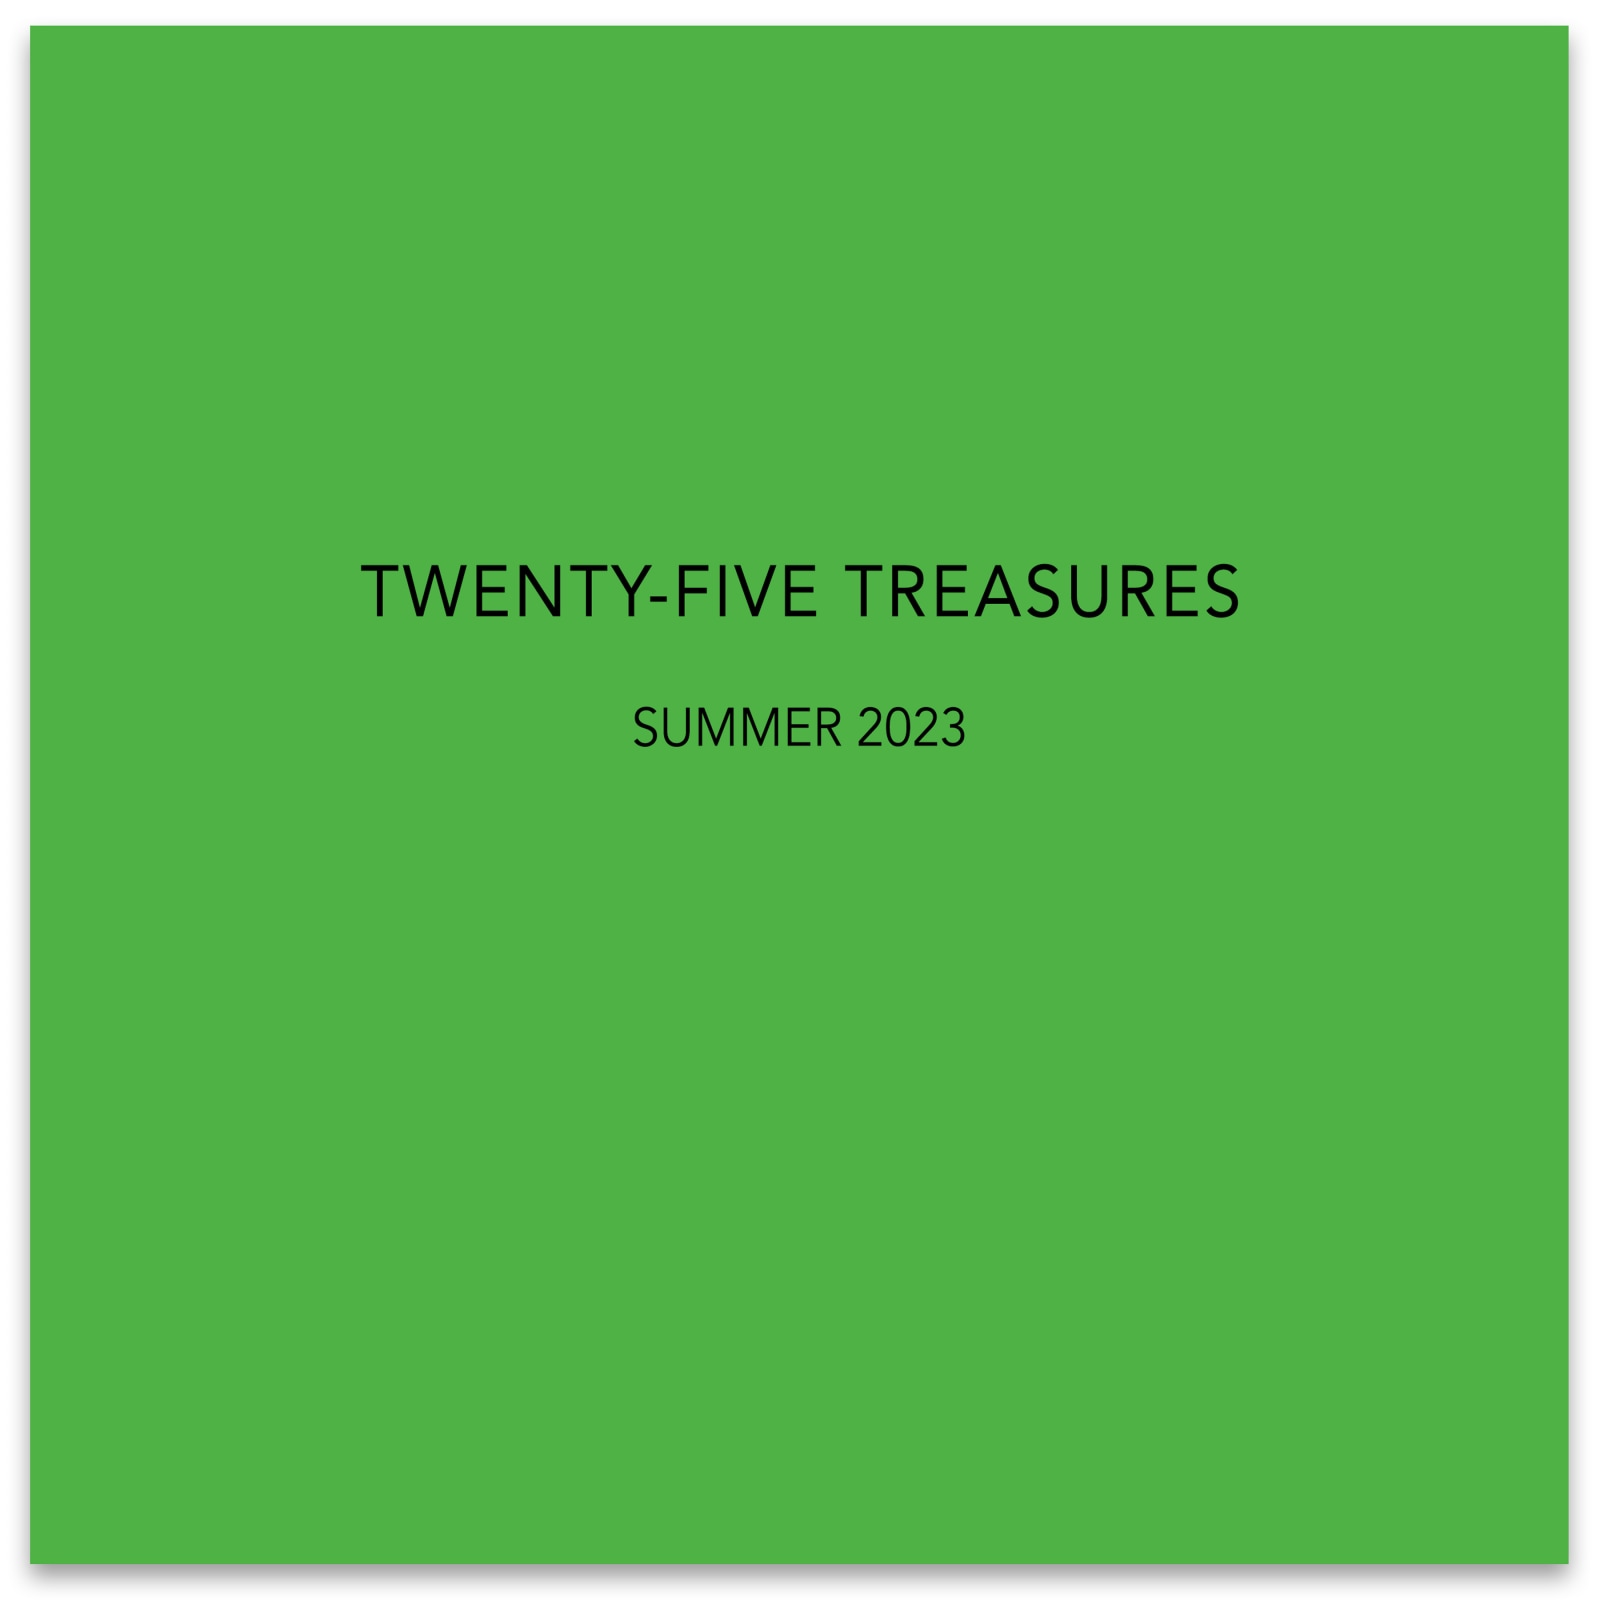 TWENTY-FIVE TREASURES - July 6 - August 19, 2023 - Publications - Paul Thiebaud Gallery